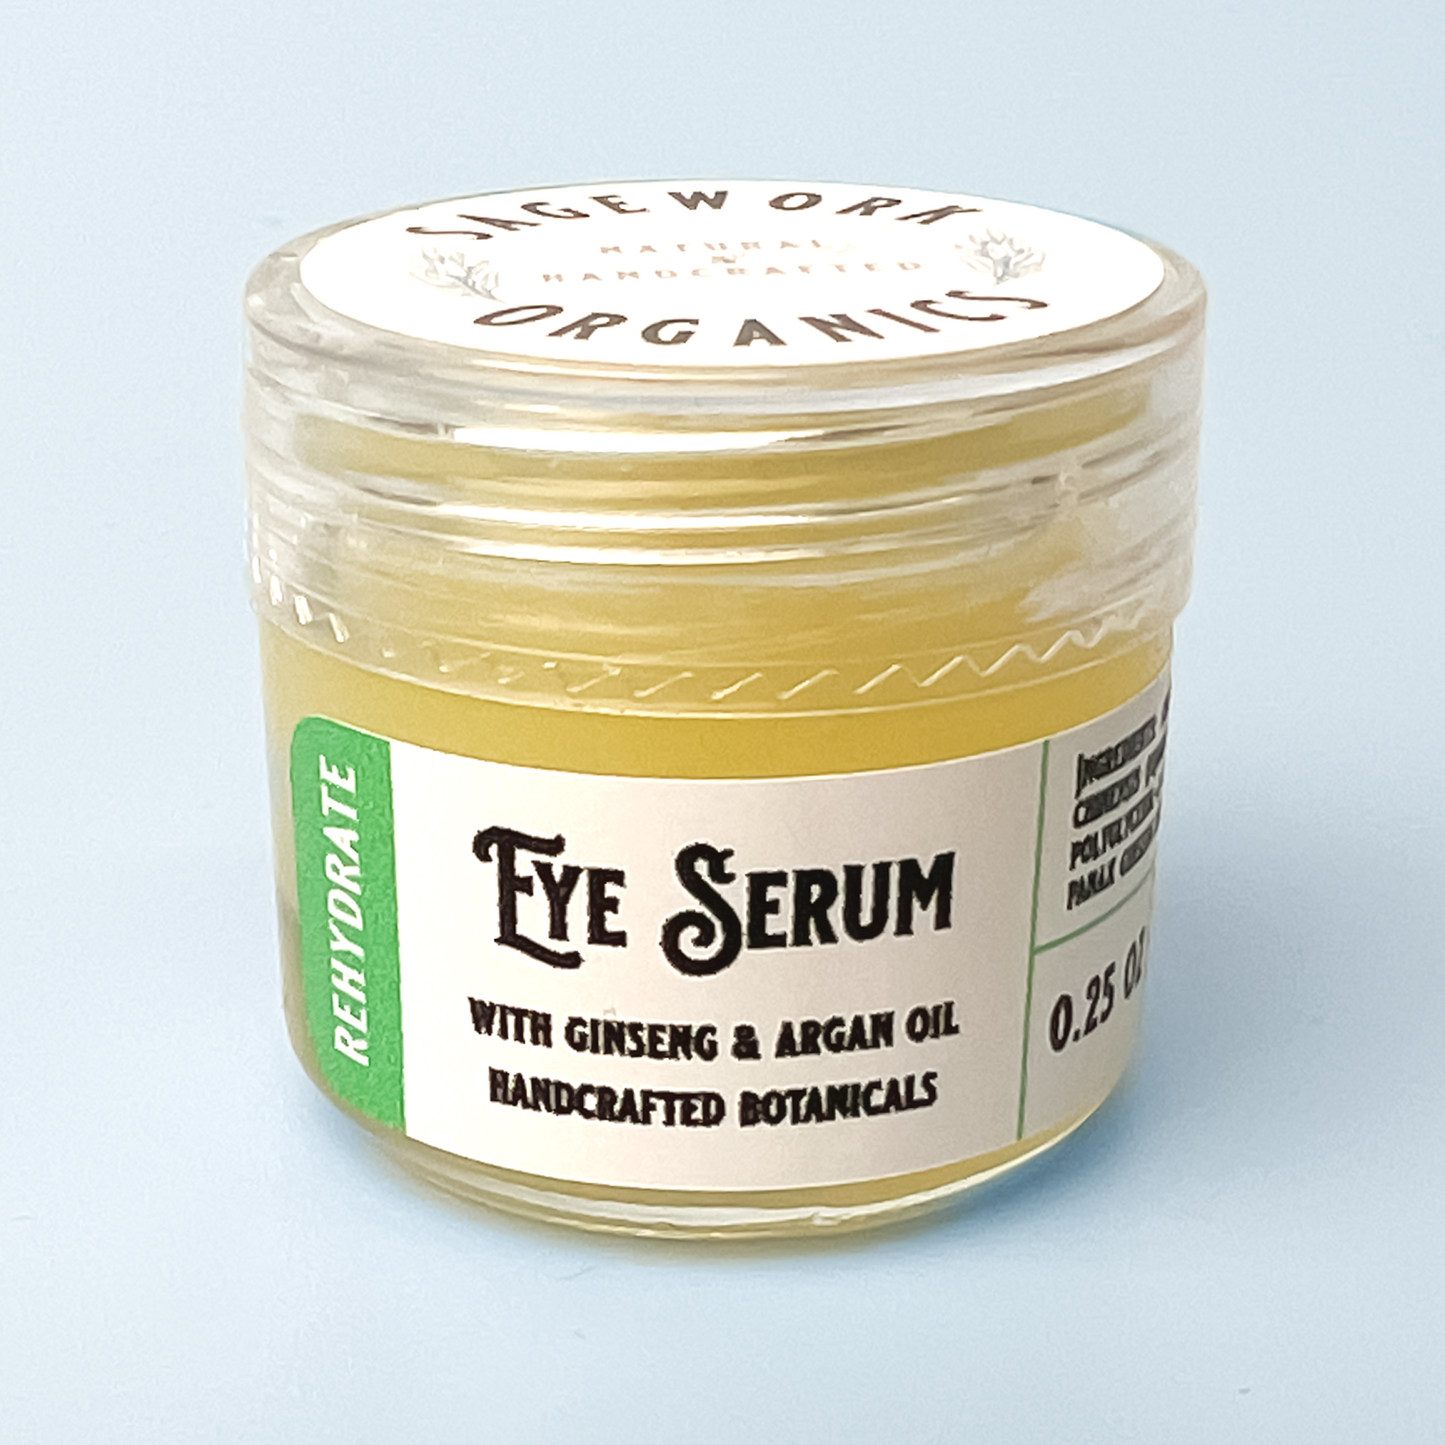 Eye Serum - Argan Oil & Ginseng